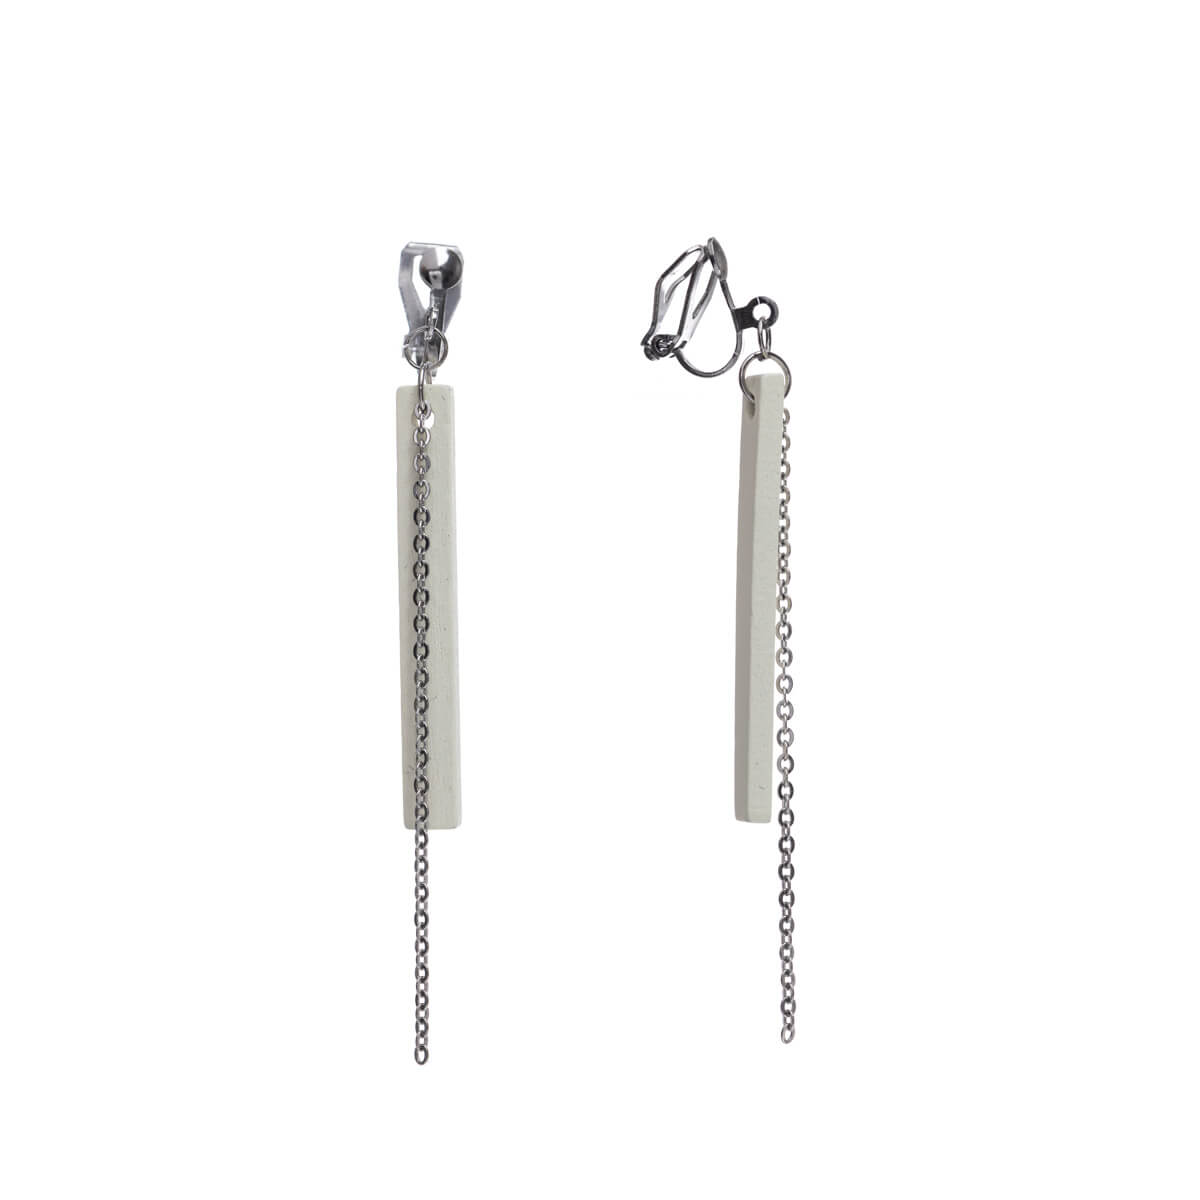 Wooden pillar clip earrings - Made in Finland (steel 316L)